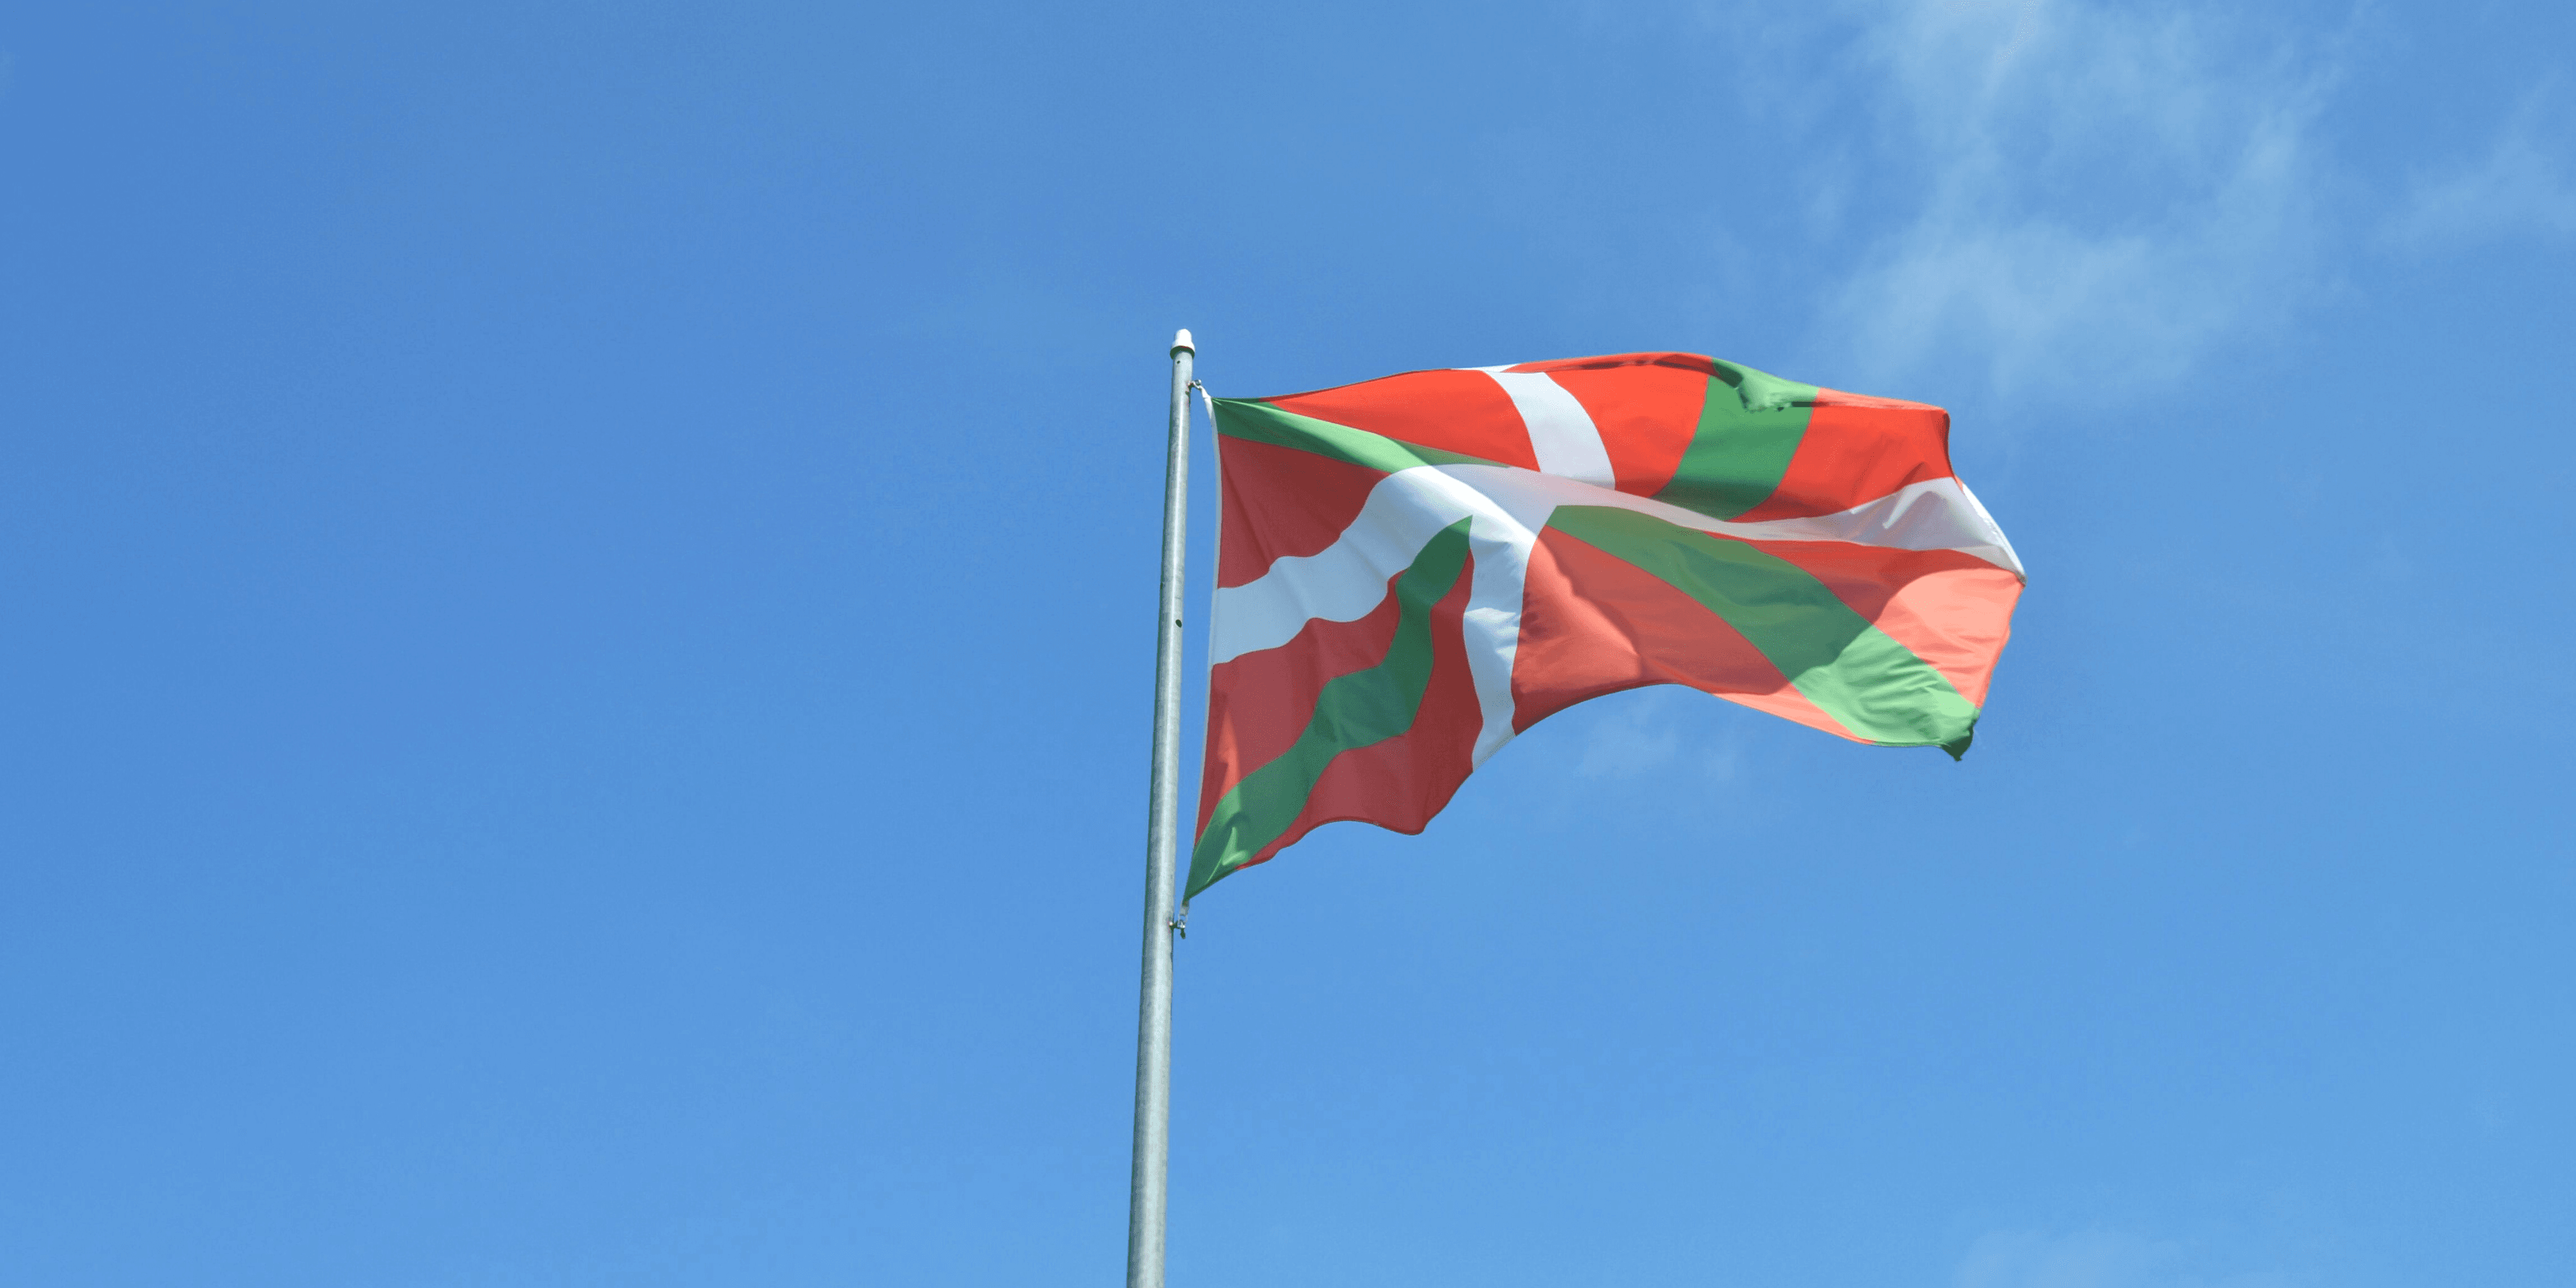 Vous reconnaissez le drapeau du Pays Basque ?